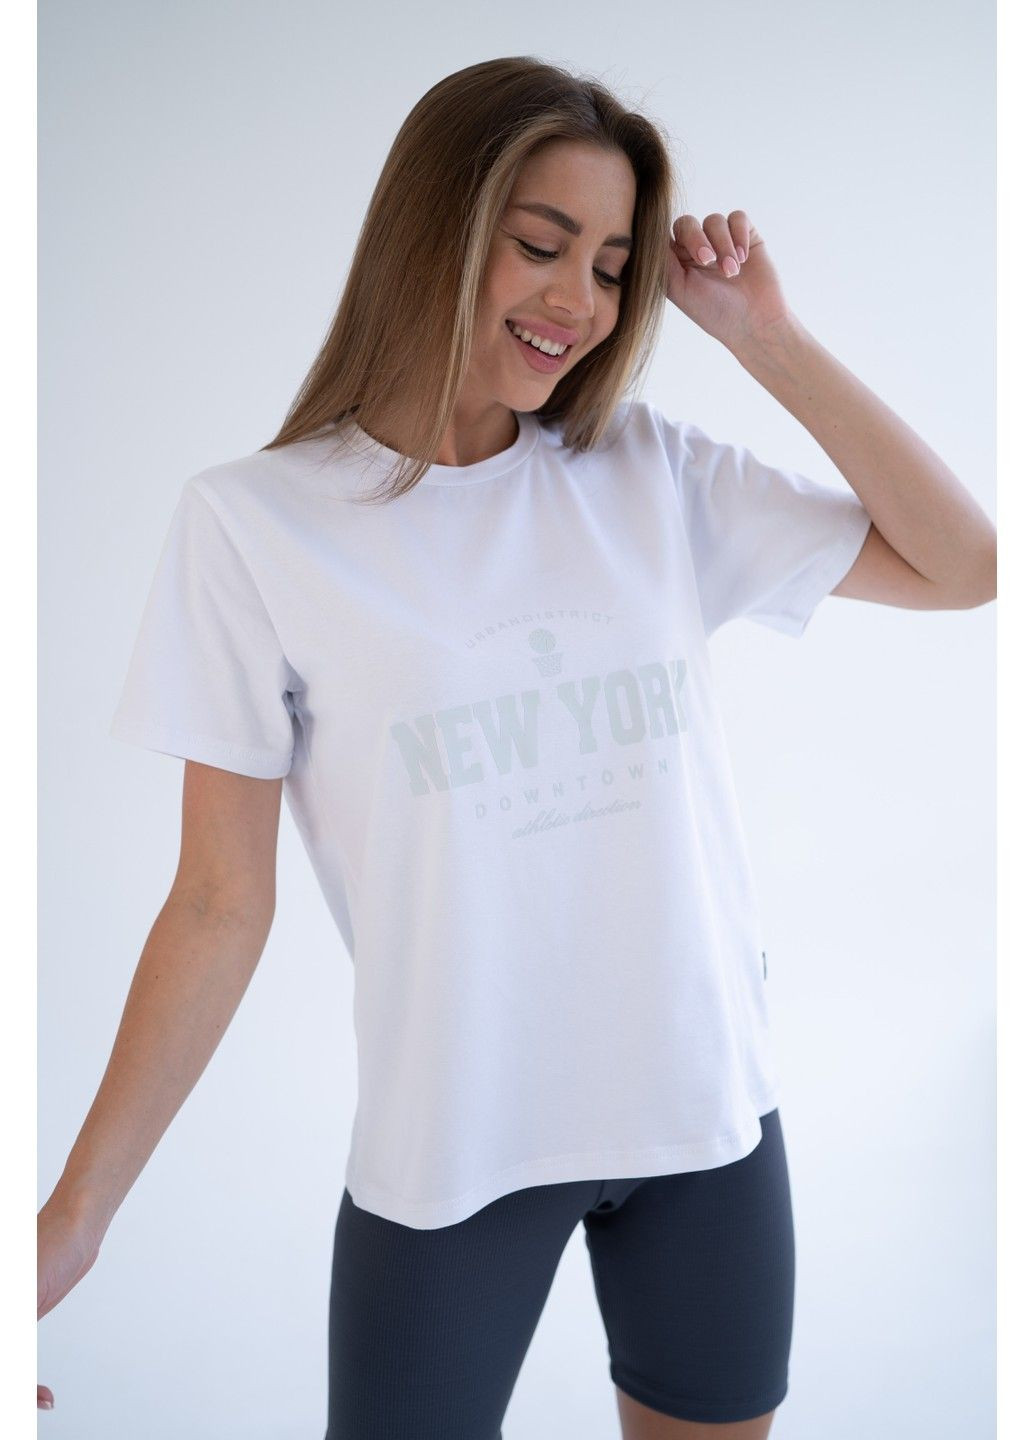 Белая летняя женская хлопковая футболка new york белая Teamv